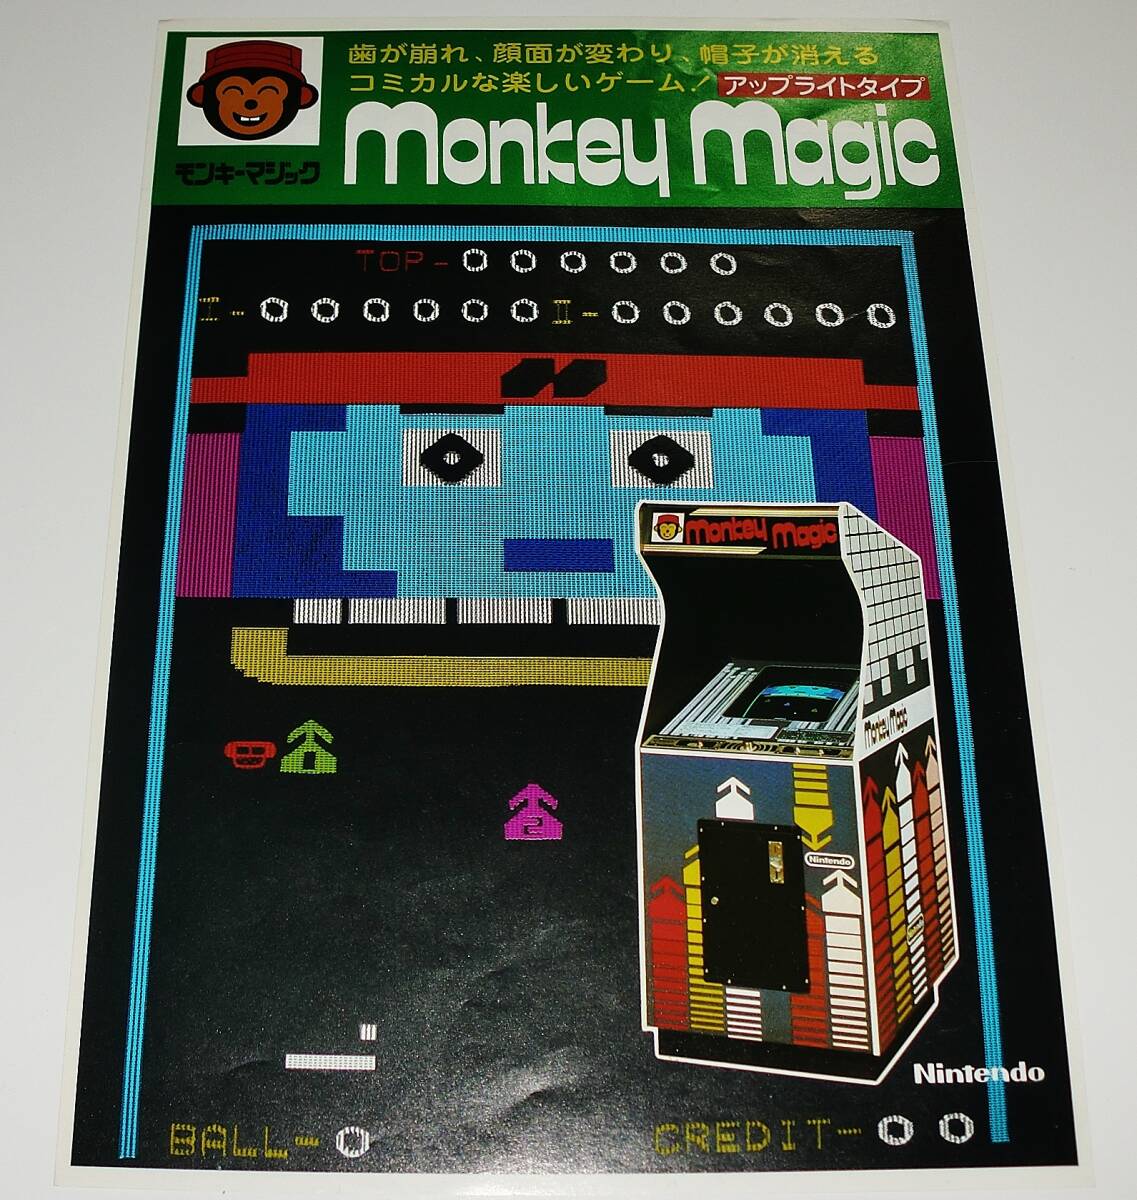 * Showa Retro // nintendo arcade game [ Monkey Magic //monkey magic] leaflet catalog // that time thing pamphlet valuable materials!!* free shipping 